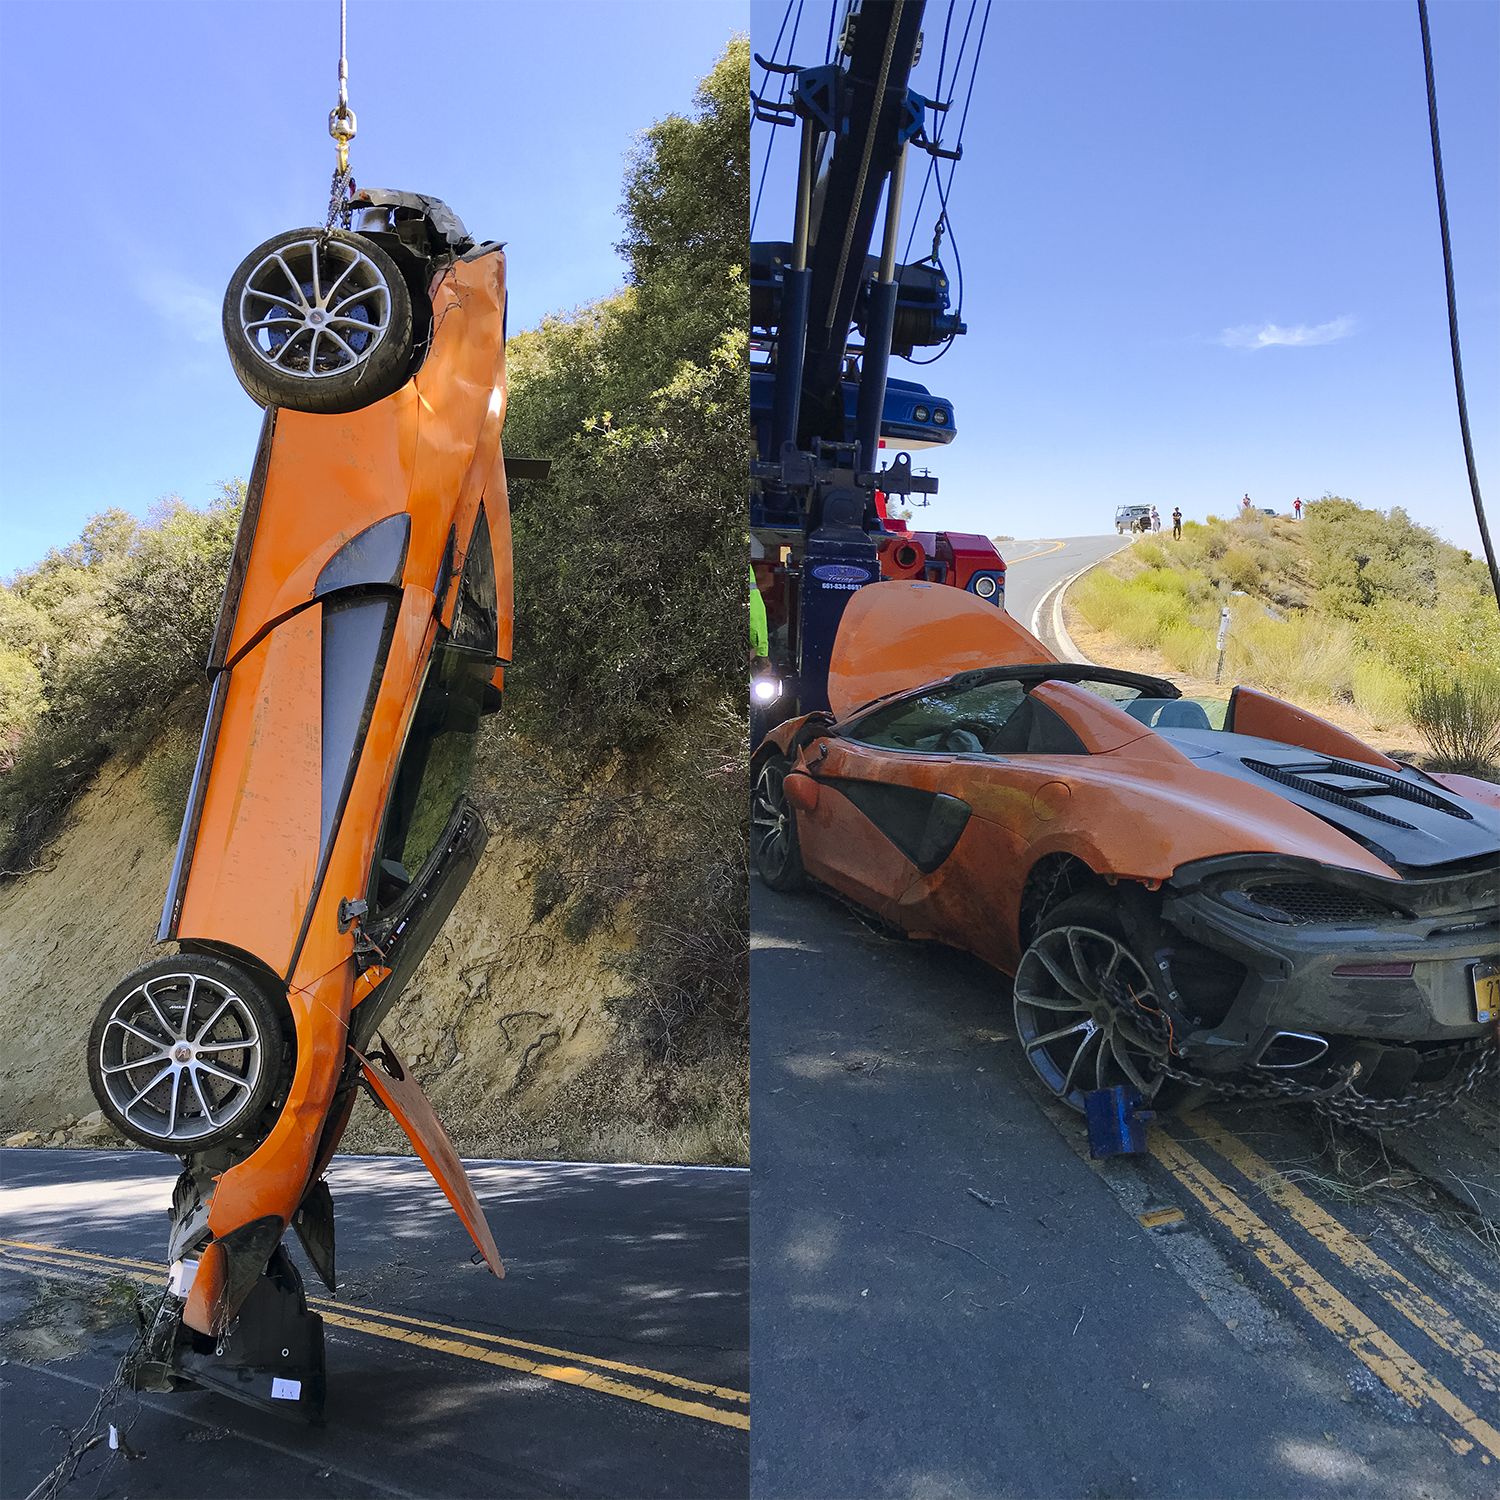 Reliving My Horrific McLaren Crash Five Years Later